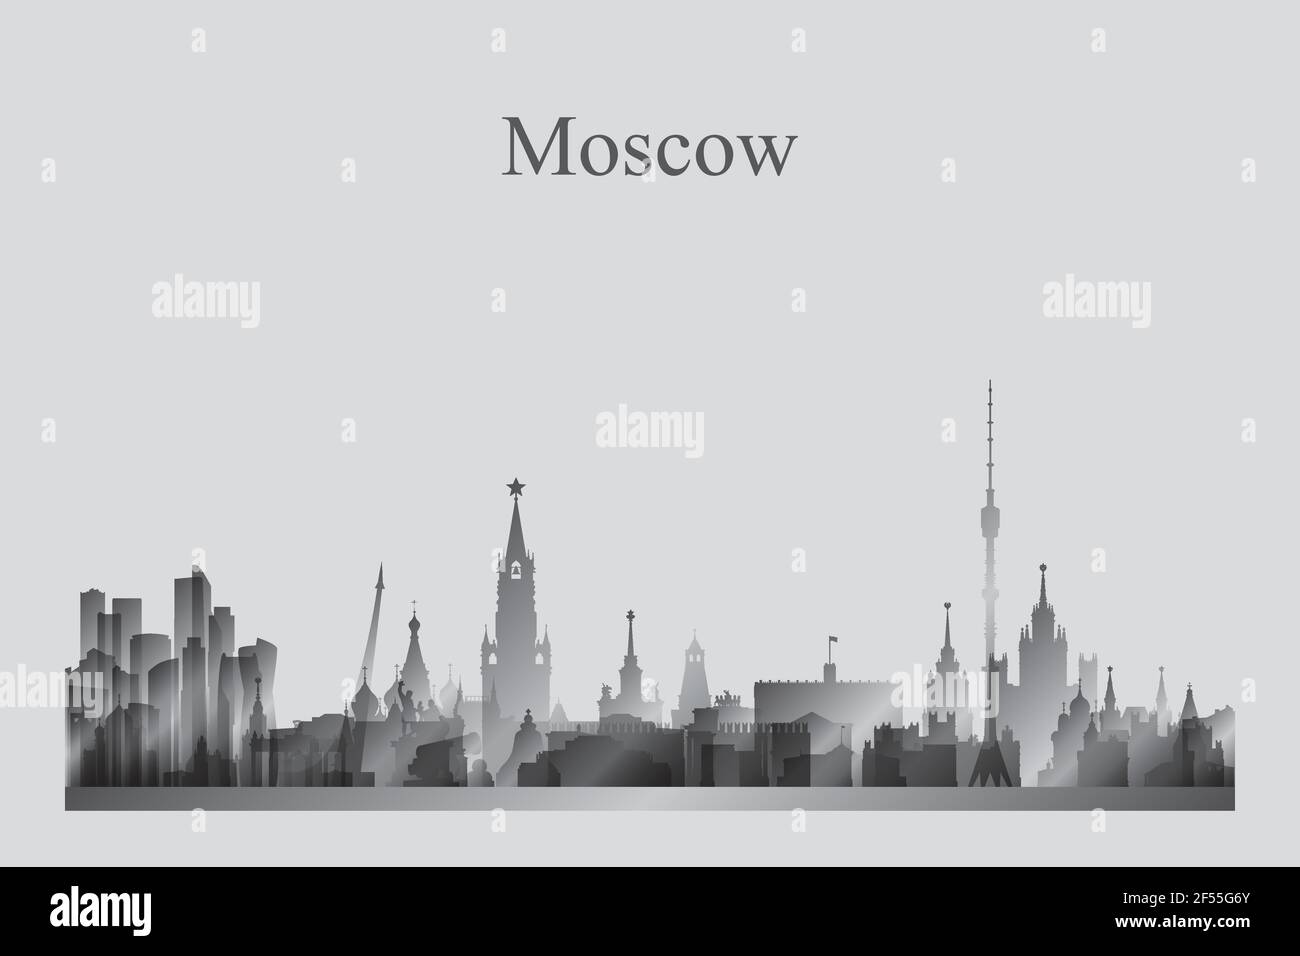 Skyline von Moskau Silhouette in einer Graustufen-Vektor-Illustration Stock Vektor